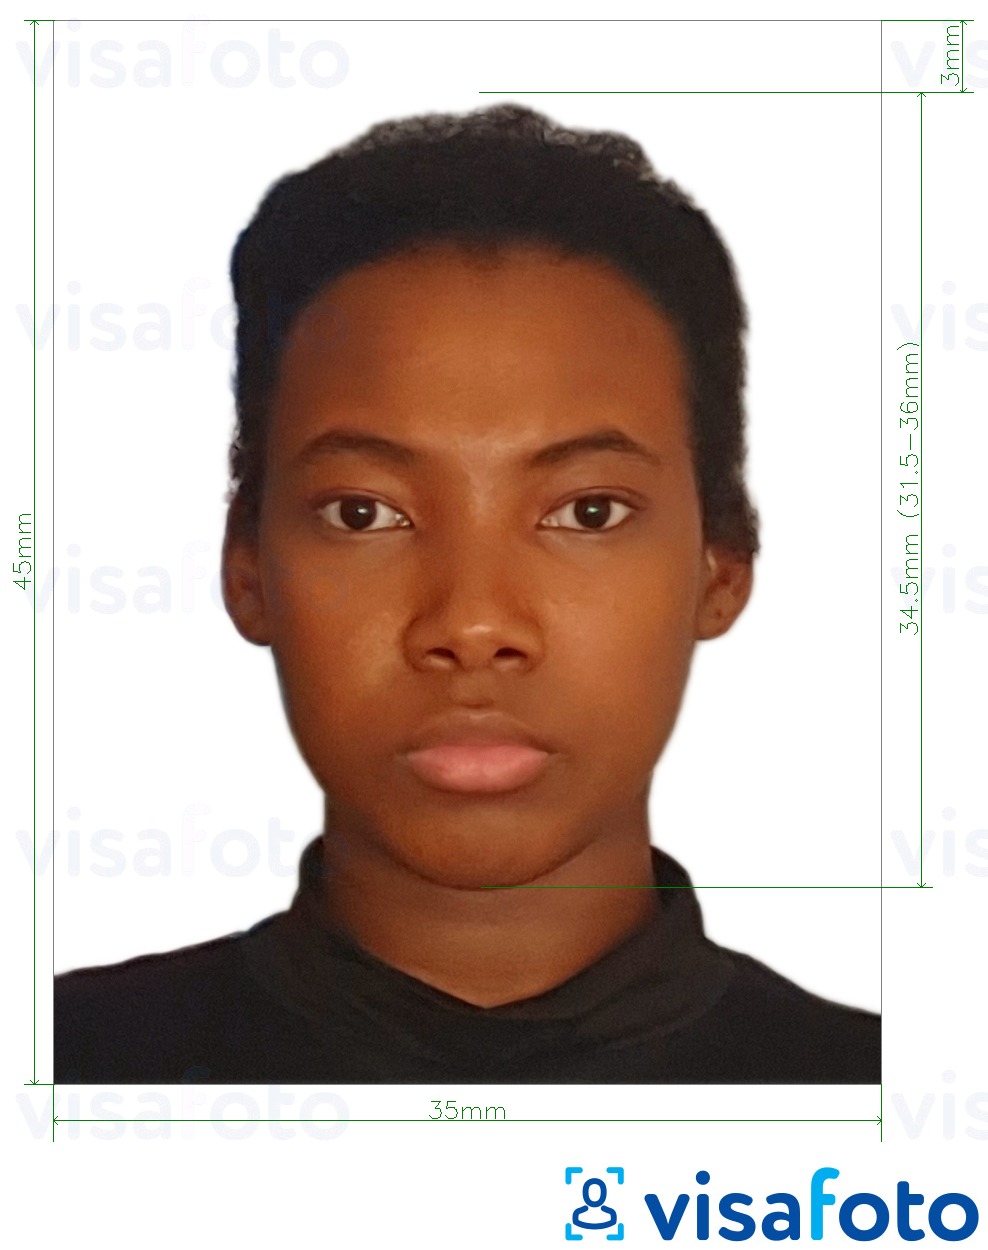 Primjer fotografije za Burkina Faso putovnica 4,5x3,5 cm (45x35 mm) s točno određenom veličinom